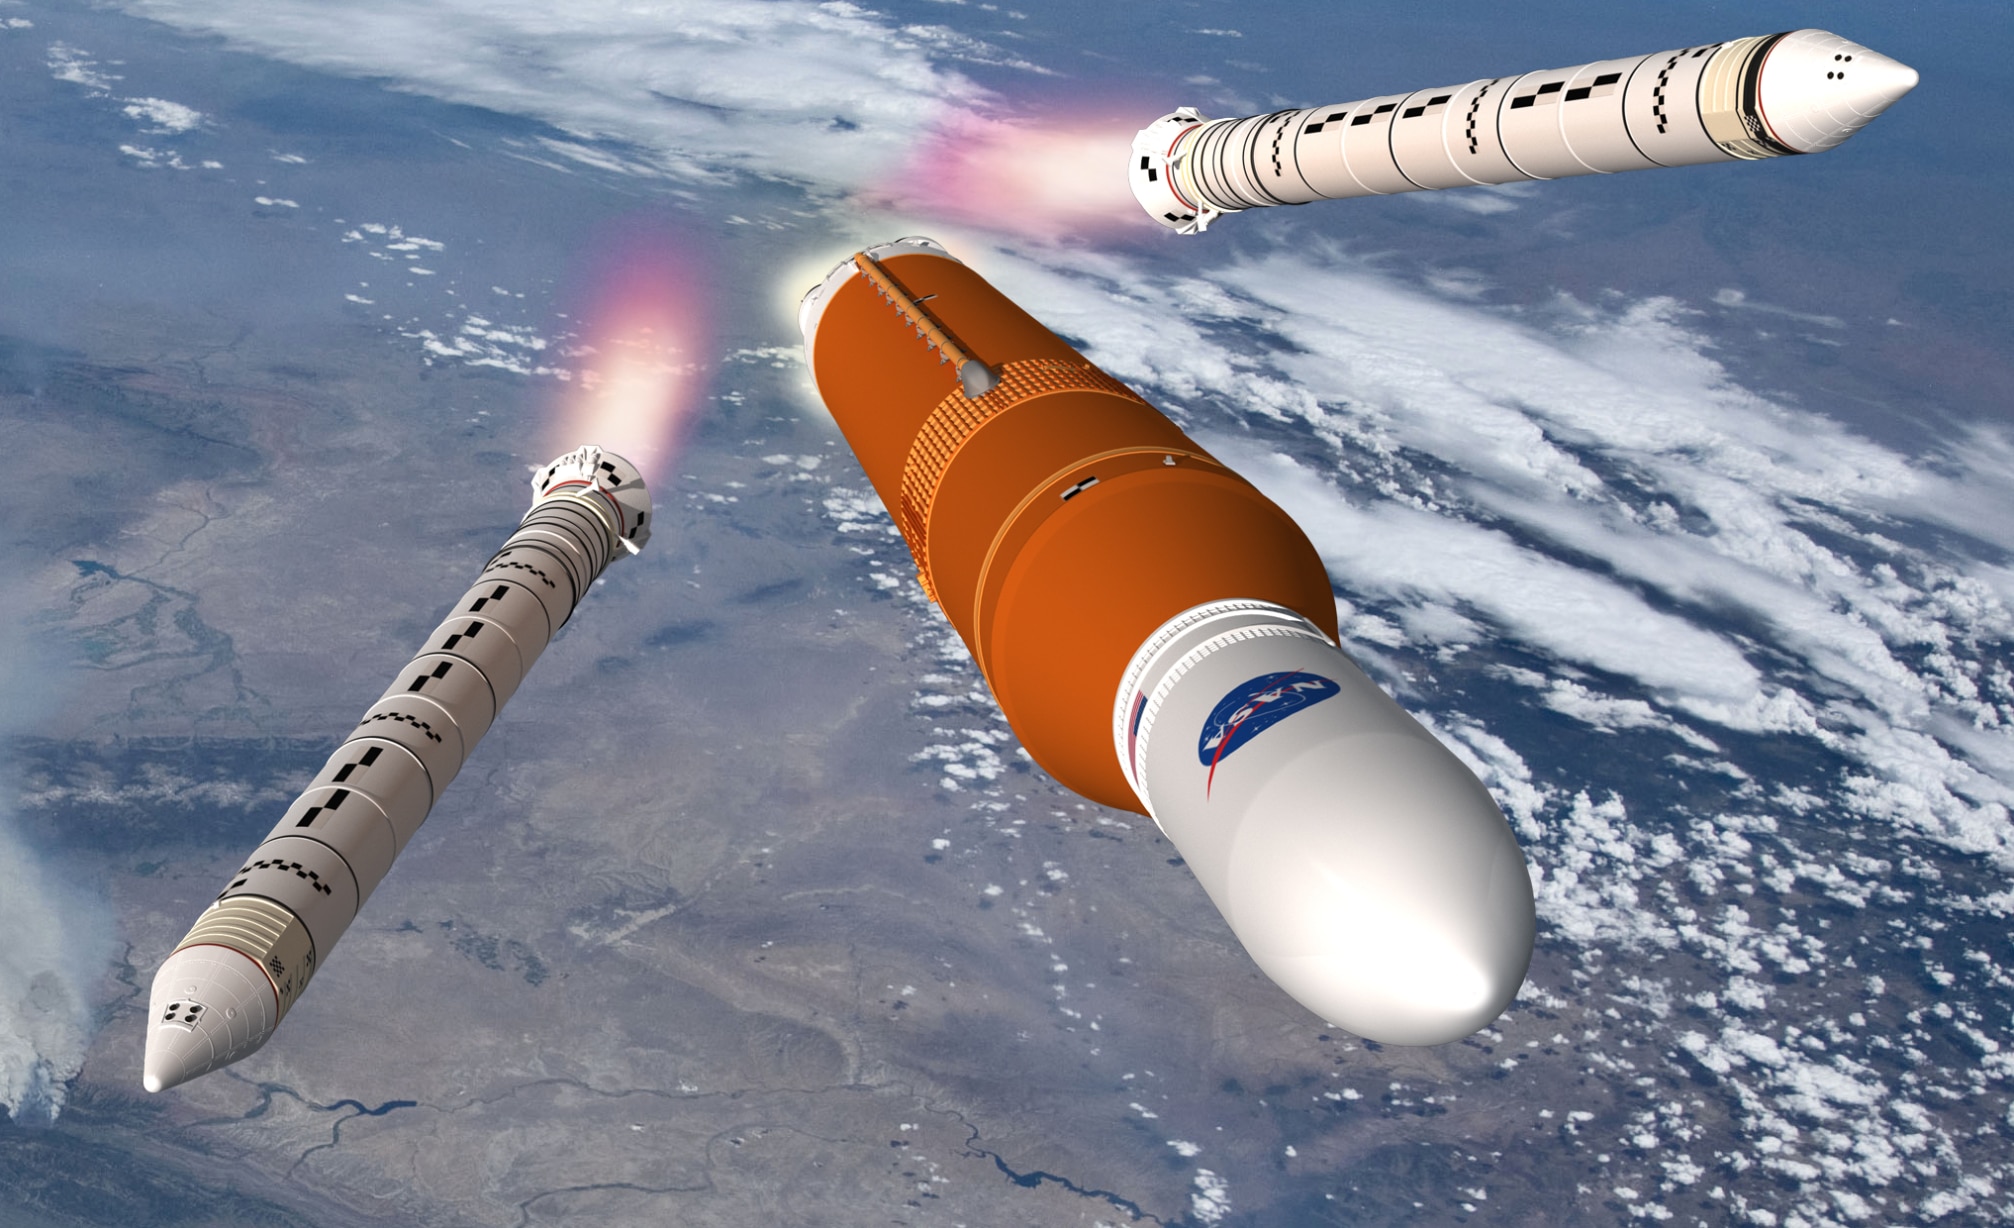 NASA SLS rocket image